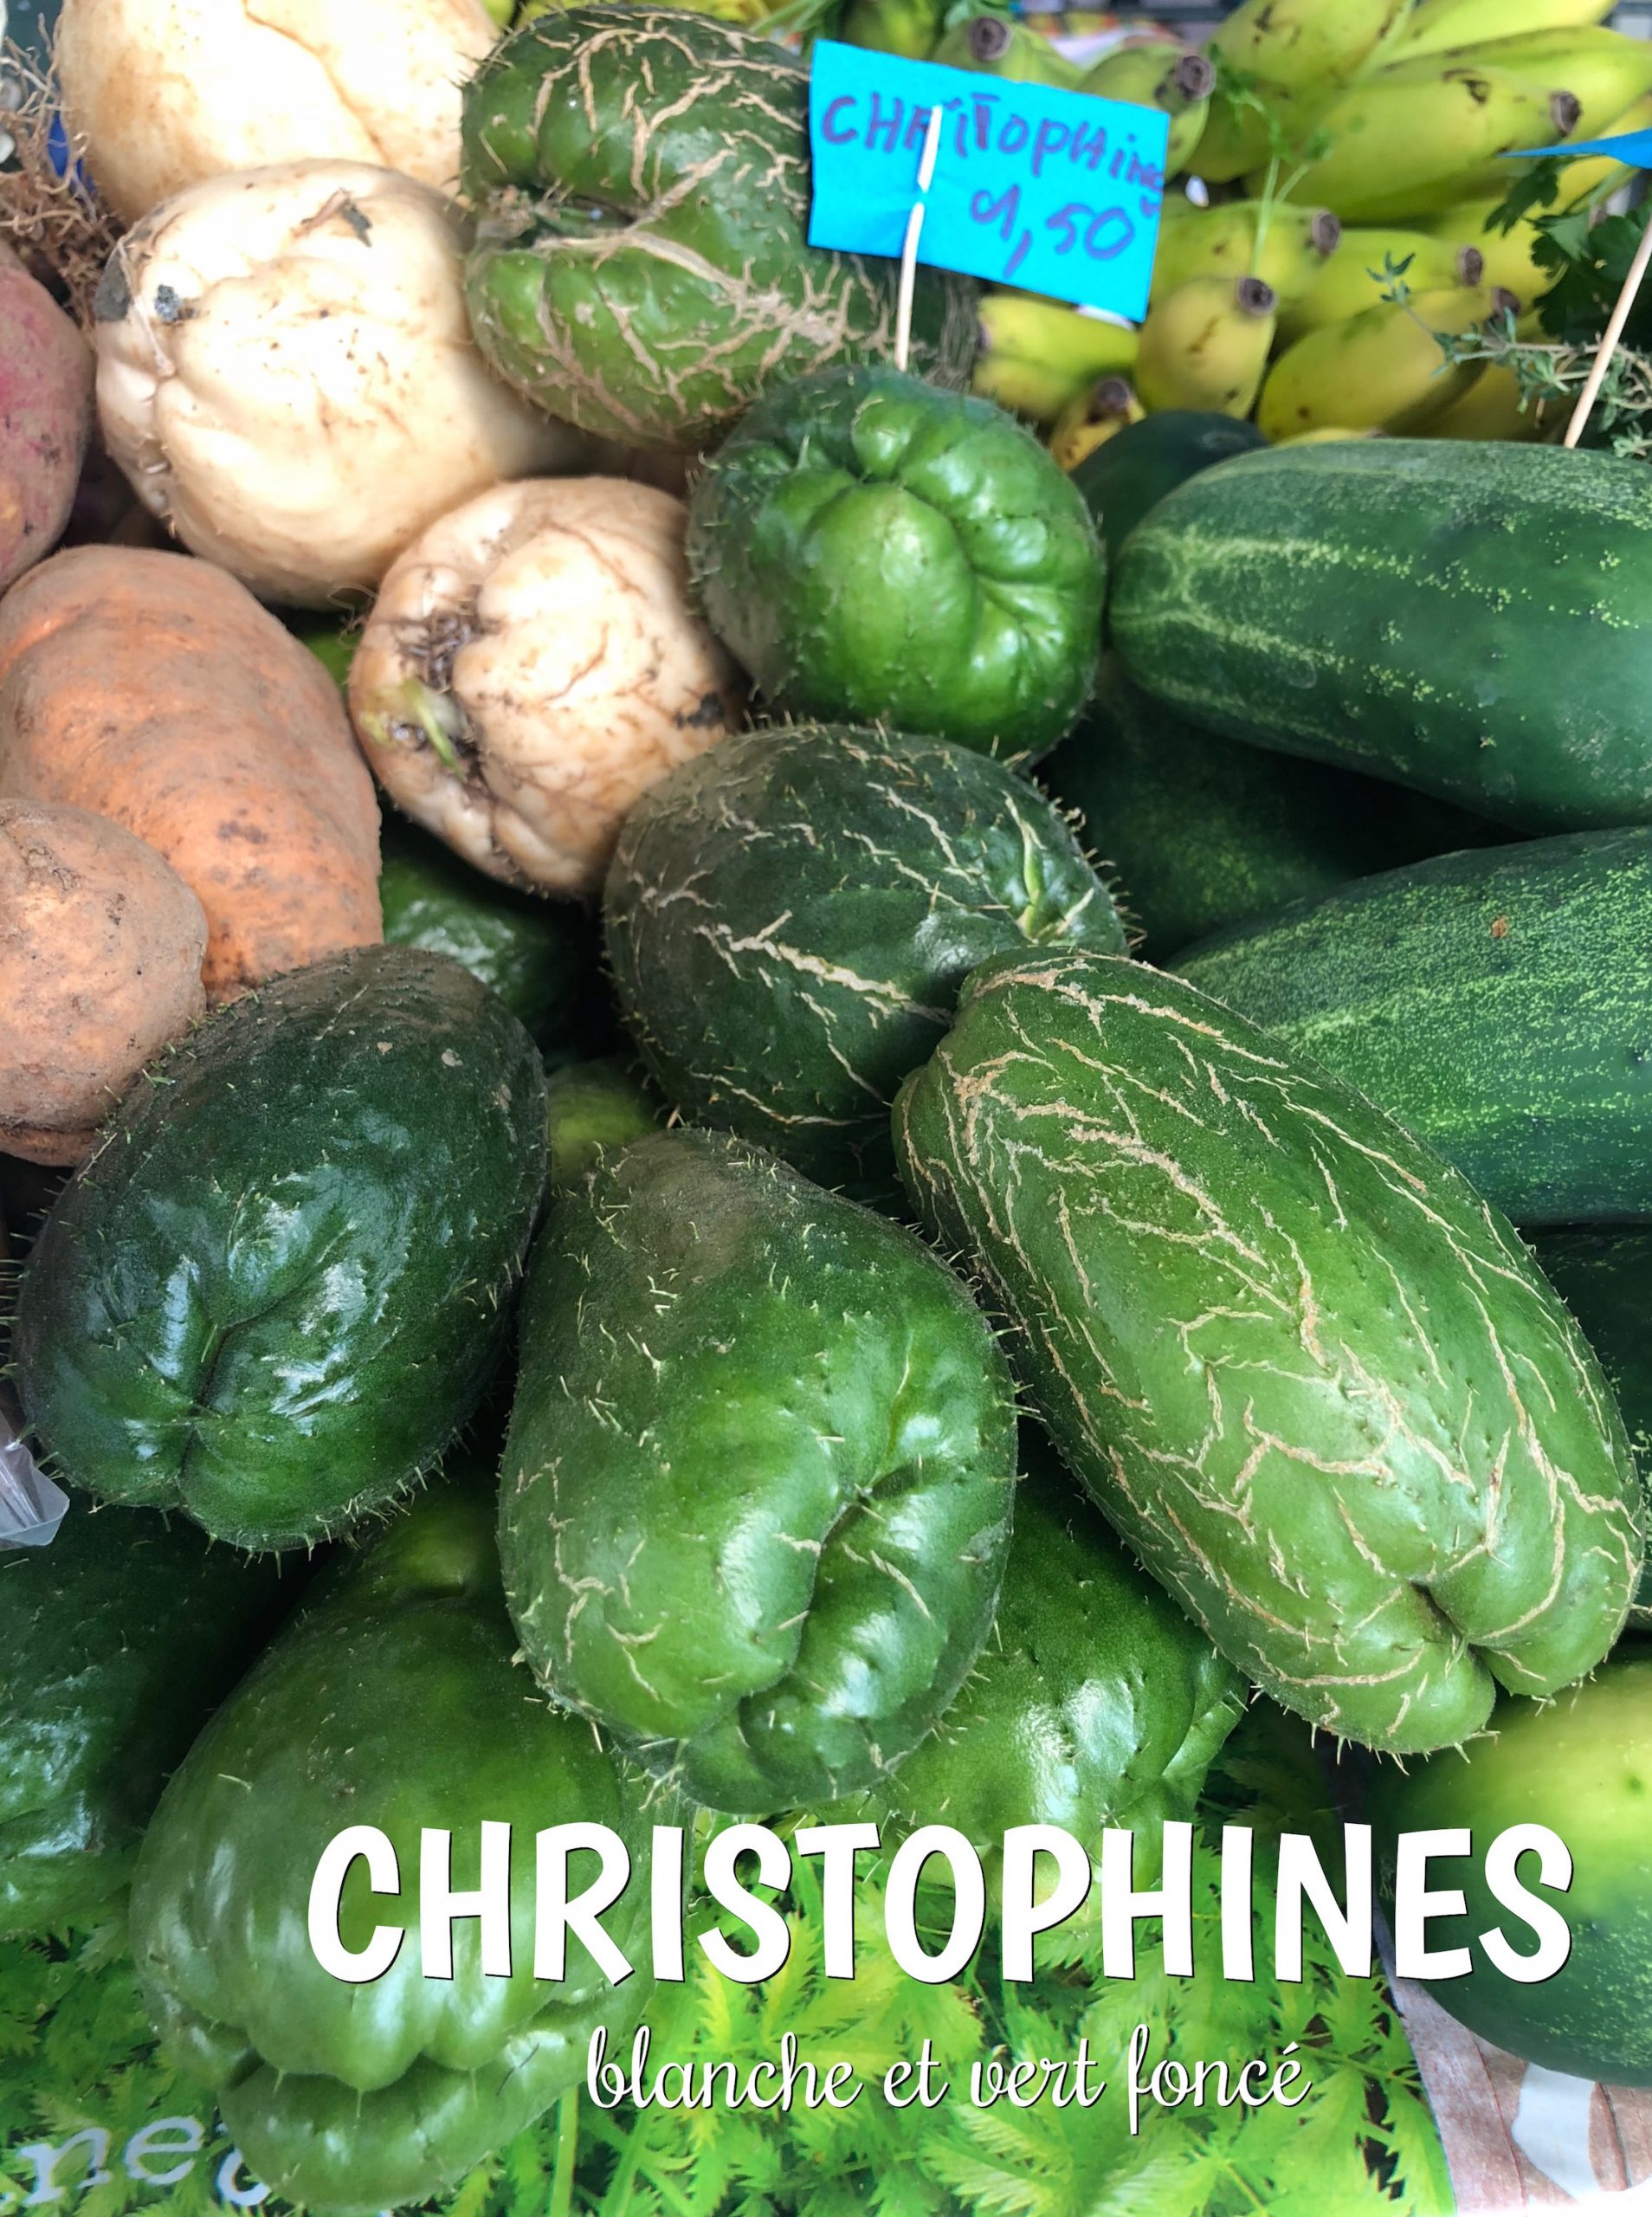 variétés de christophines aux Antilles